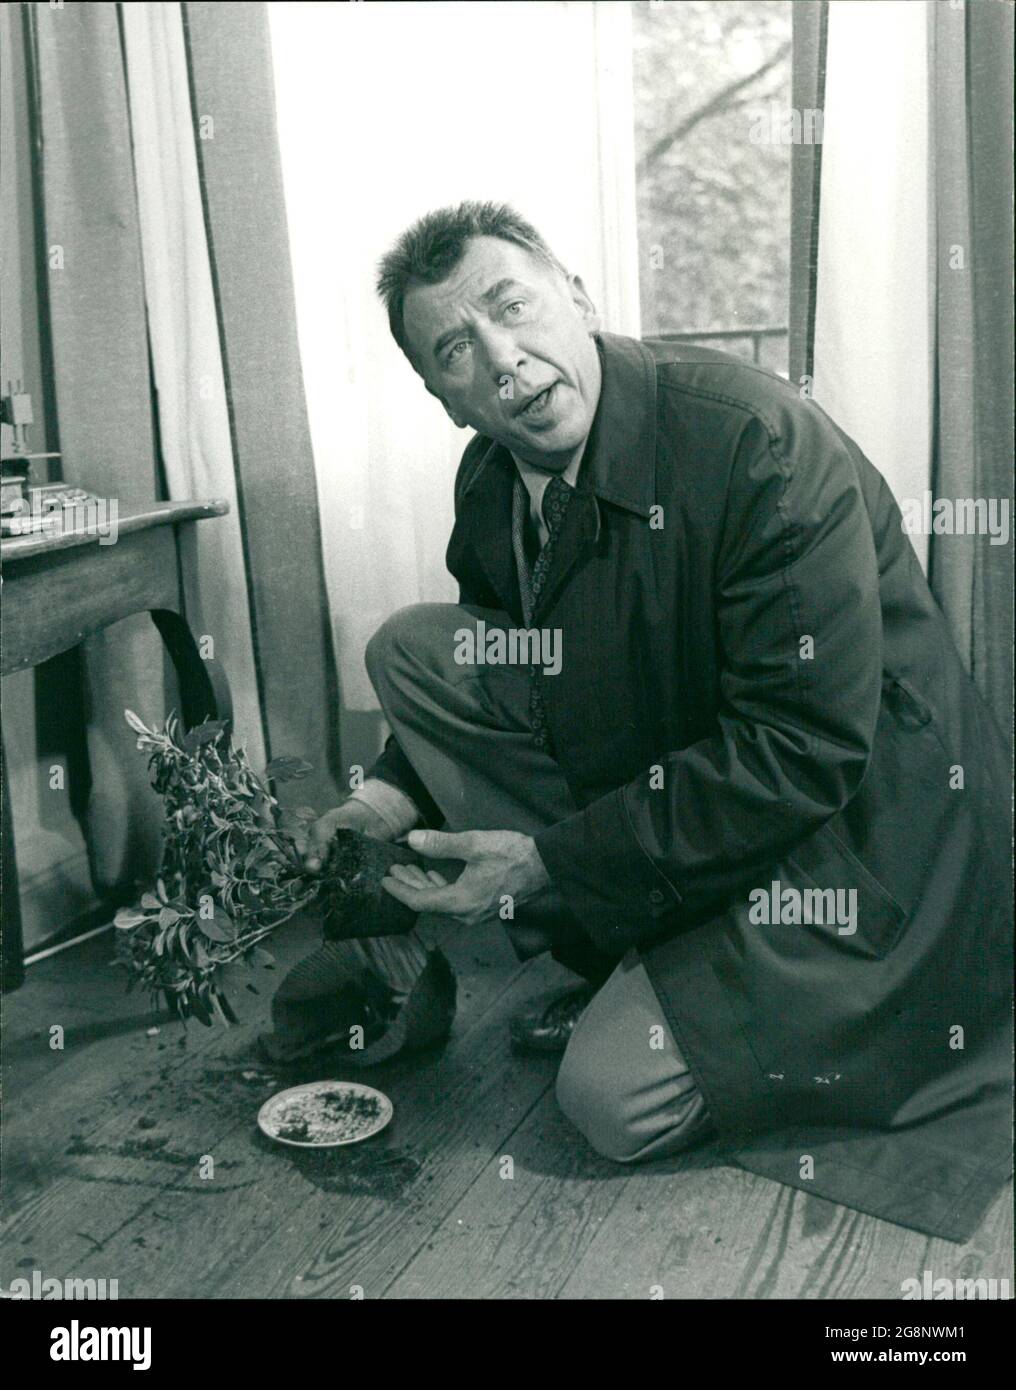 Im Zimmer der Toten findet Kommissar Diekmann einen Blumentopf, der seine Aufmerksamkeit ganz besonders in Anspruch nimmt. (Hubert Suschka) Stock Photo